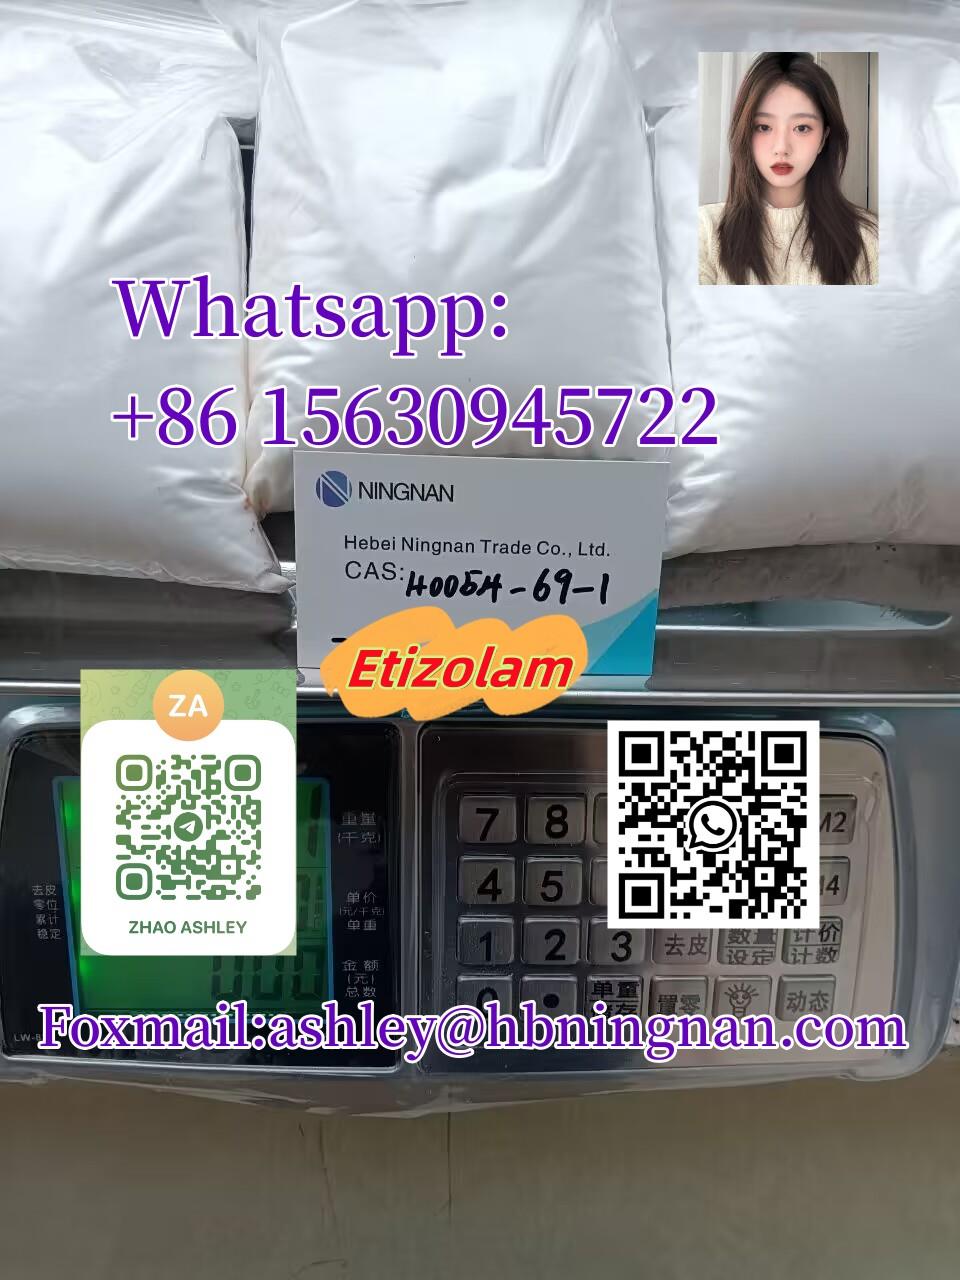 cas 40054-69-1   Etizolam in stock hot to sale 